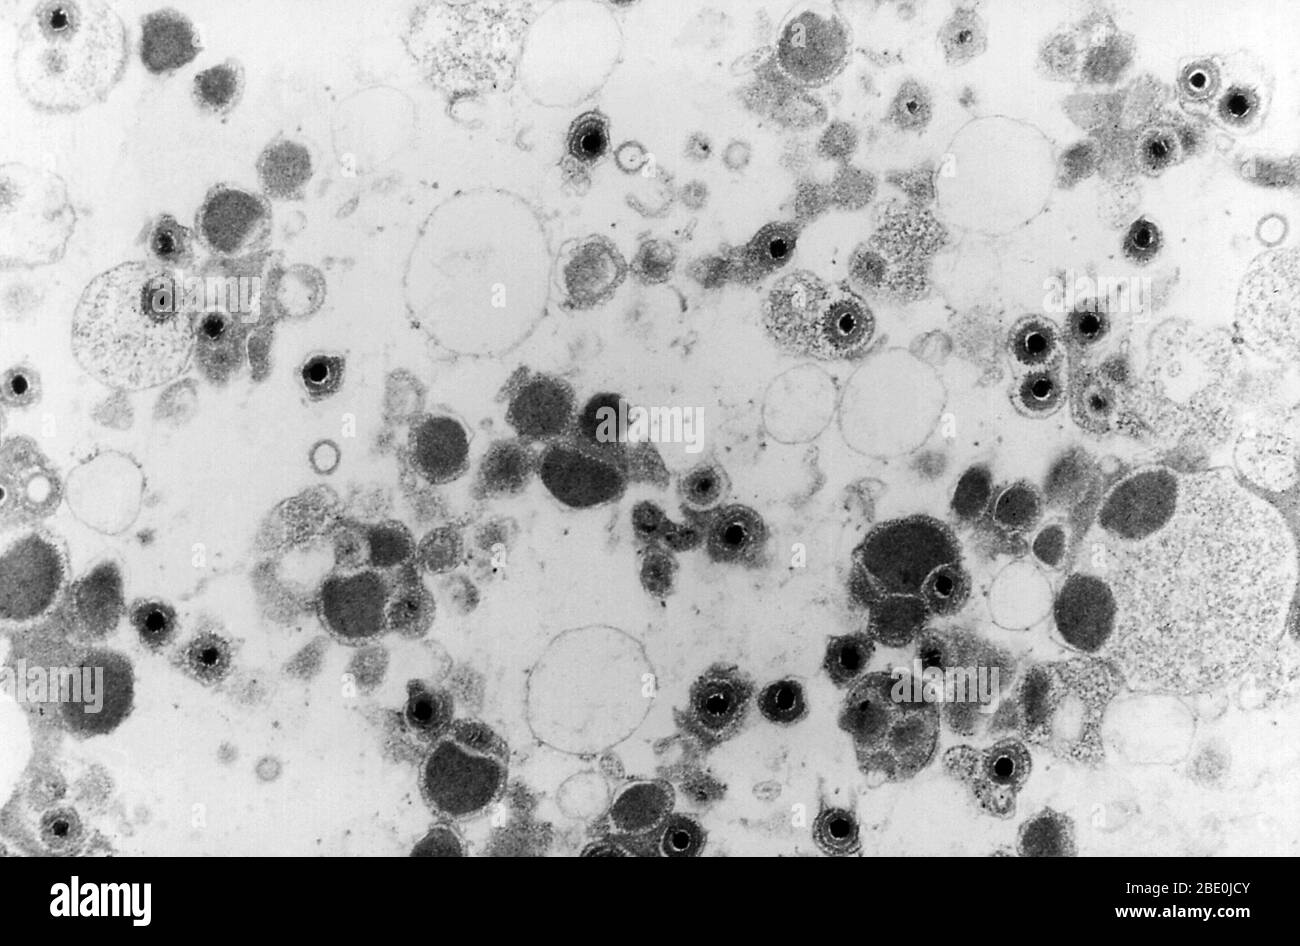 Transmission Electron Micrograph (TEM) zeigt eine Reihe von Cytomegalievirus-Virionen, die in einer unbekannten Gewebeprobe vorhanden sind. Cytomegalievirus (CMV) ist eine Gattung von Viren in der Reihenfolge Herpesvirales, in der Familie Herpesviridae, in der Unterfamilie Betaherpesvirinae. Menschen und Affen dienen als natürliche Wirte. Cytomegalievirus ist ein doppelsträngiger DNA-Virus (dsDNA). Derzeit gibt es acht Arten in dieser Gattung, darunter die Typusart, das menschliche Cytomegalievirus (HCMV, menschliches Herpesvirus 5, HHV-5), die die Spezies ist, die den Menschen infiziert. In der medizinischen Literatur werden die meisten CMV-Erwähnungen ohne weitere Spezifikationsspezifikation erwähnt Stockfoto